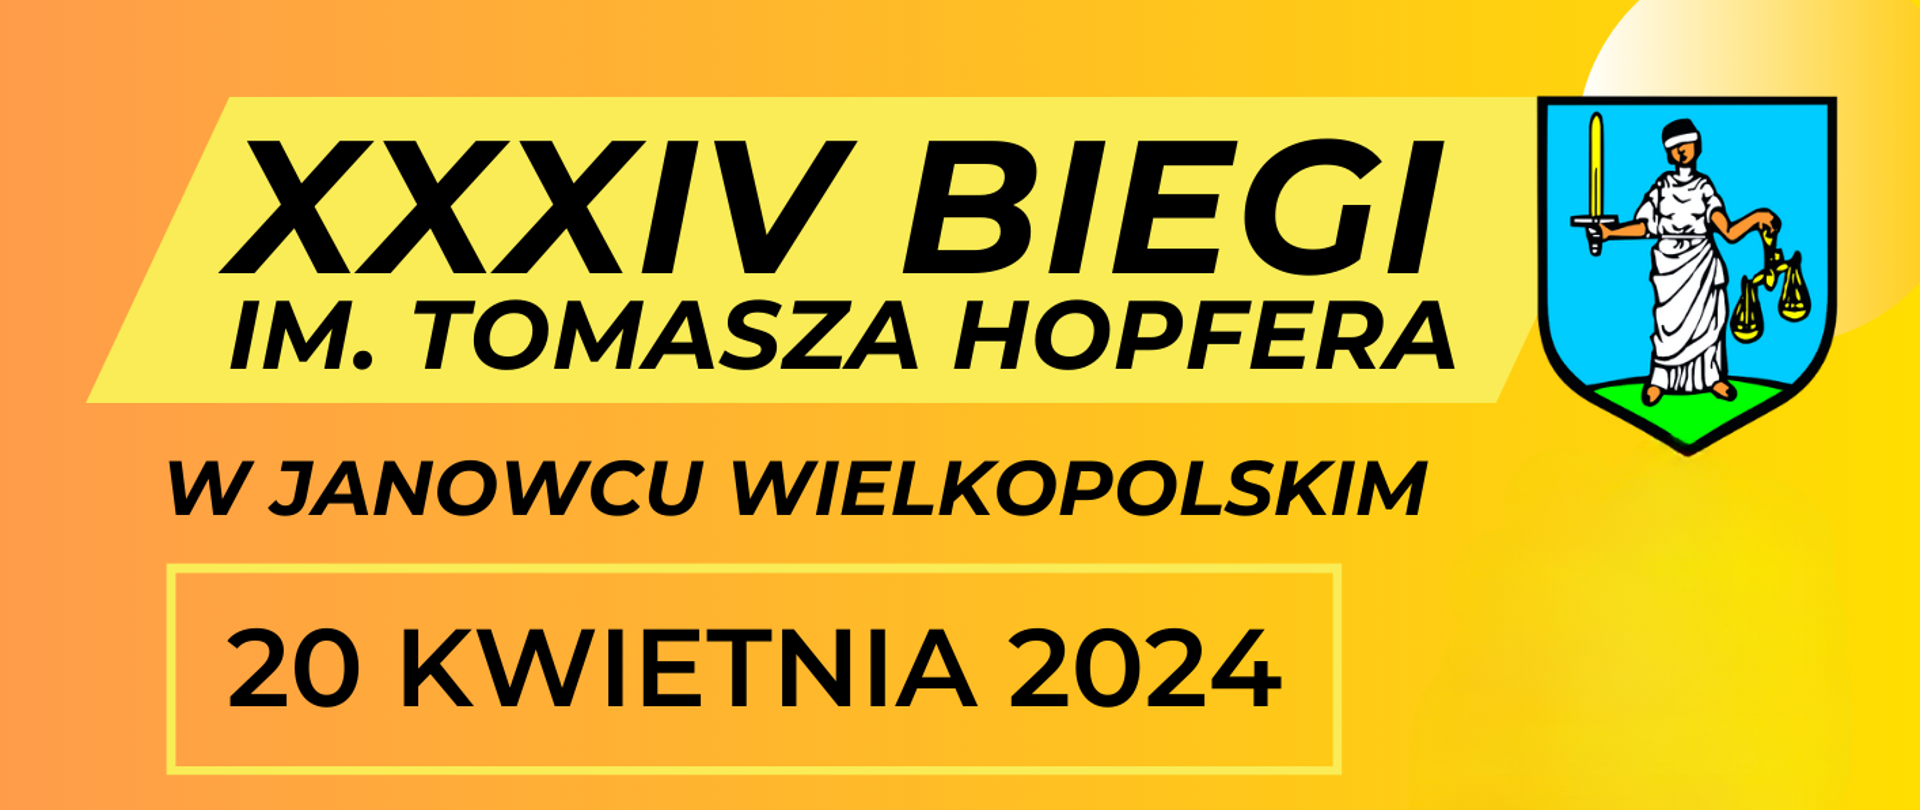 banner - XXXIV Biegi im. T. Hopfera w Janowcu Wielkopolskim, 20 kwietnia 2024